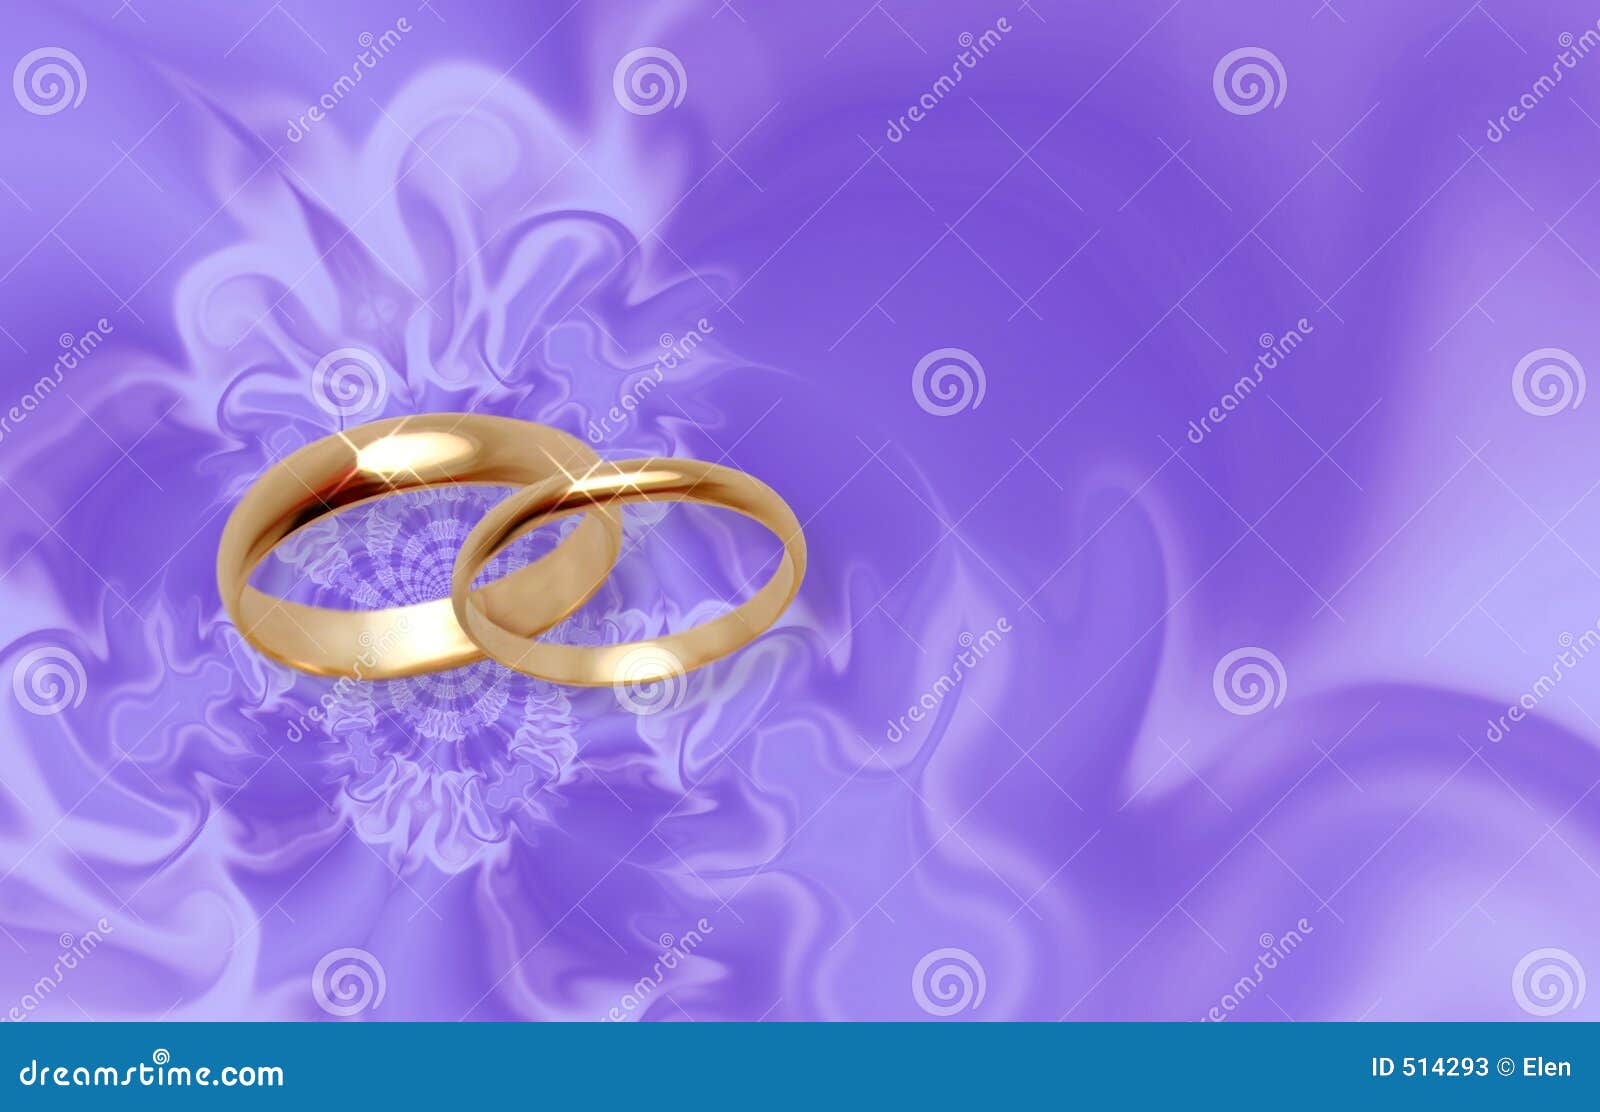 Đôi uyên ương đã vẽ lên vải màu tím hoa lưu ly những chiếc nhẫn cưới đầy ý nghĩa. Hình ảnh này sẽ khiến bạn muốn tìm hiểu thêm về câu chuyện tình yêu của họ và ngắm nhìn chiếc nhẫn đẹp như mơ trên tay người phụ nữ đầy hạnh phúc.